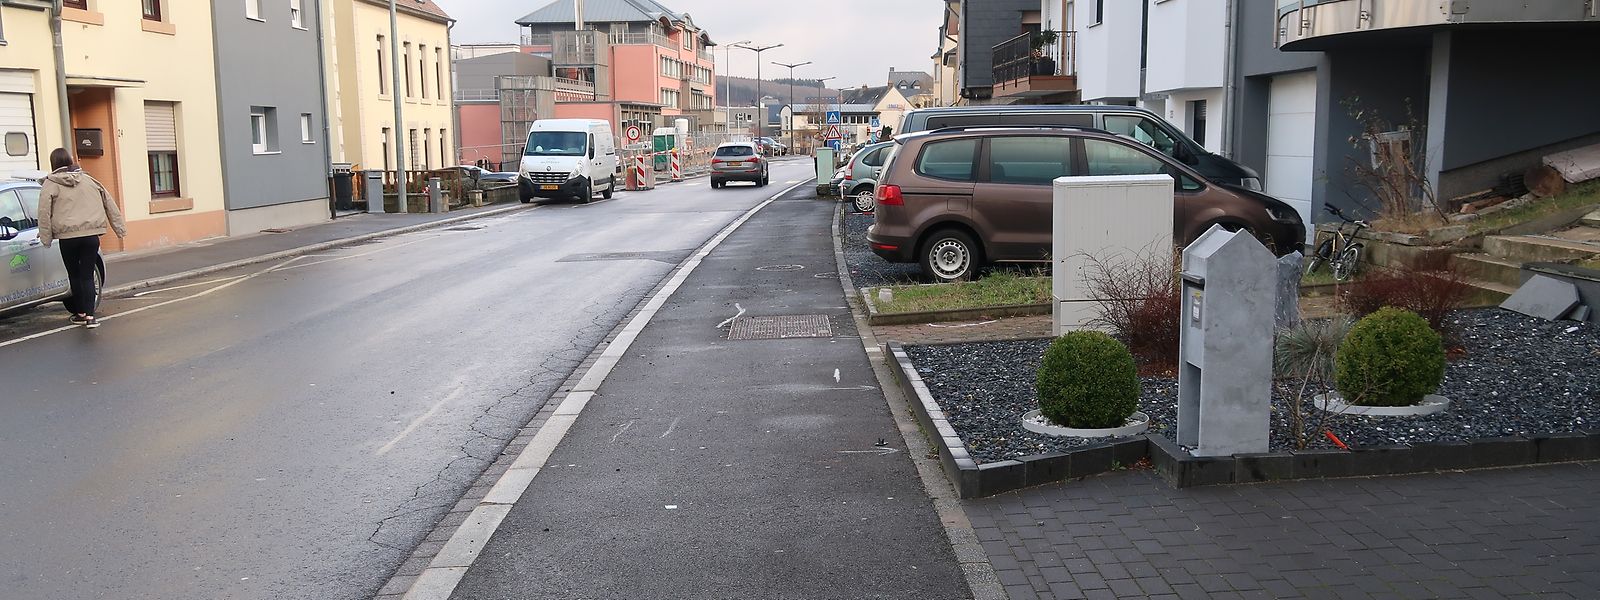 Bei der Autoattacke in der Rue Grande-Duchesse Charlotte in Oberwiltz wurden ein zweijähriger Junge getötet und vier weitere Personen teilweise schwer verletzt. Die Tat ereignete sich in direkter Nähe des Krankenhauses.